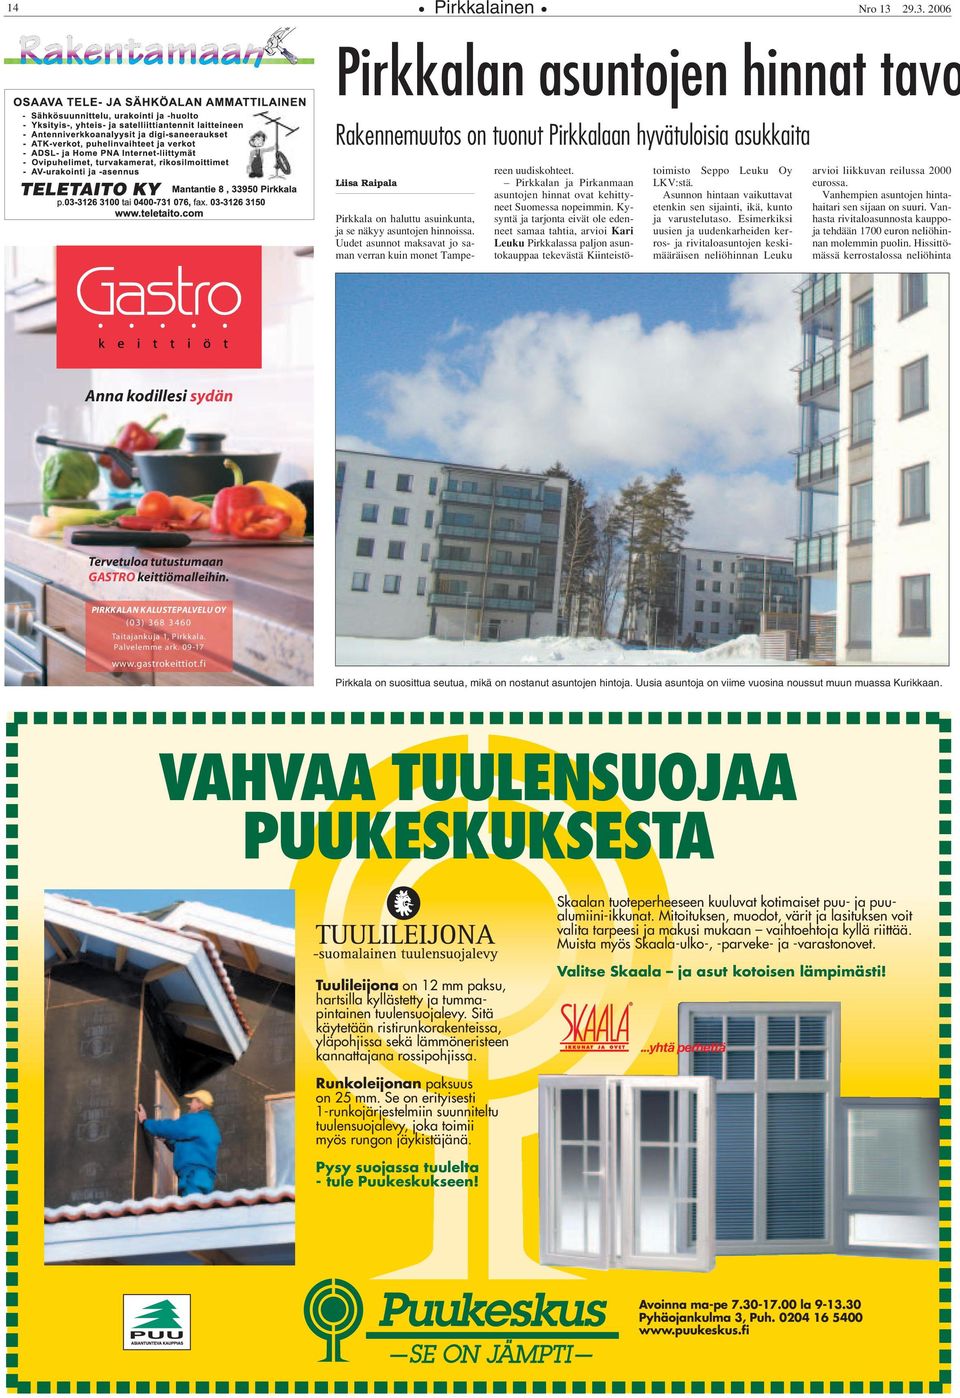 Kysyntä ja tarjonta eivät ole edenneet samaa tahtia, arvioi Kari Leuku Pirkkalassa paljon asuntokauppaa tekevästä Kiinteistötoimisto Seppo Leuku Oy LKV:stä.